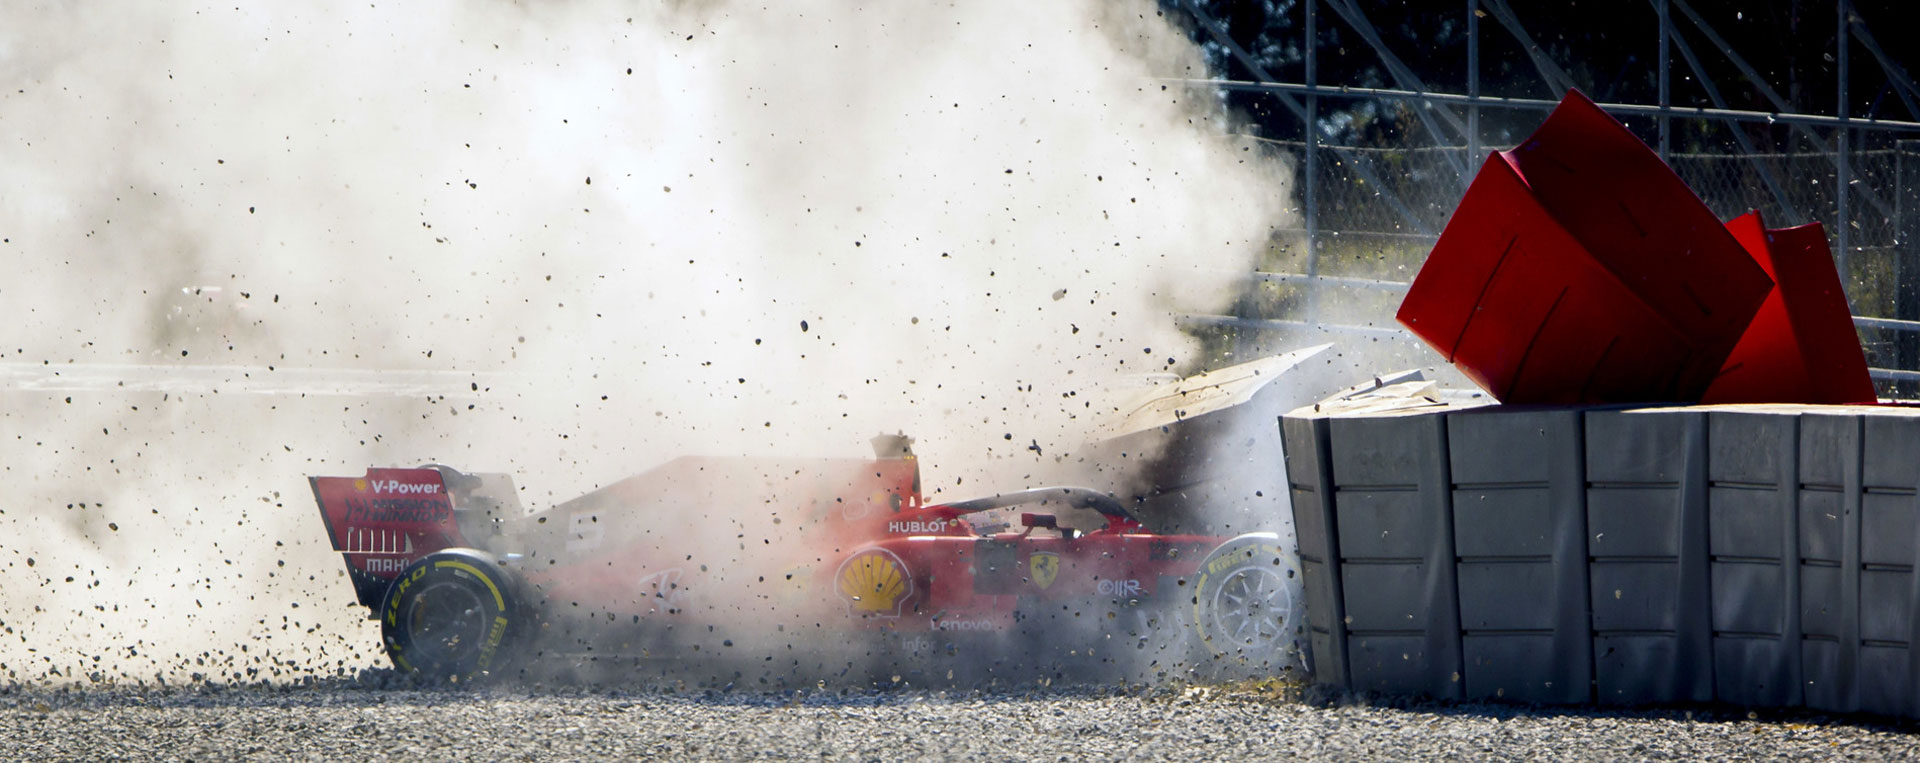 Vettel - crash essais hivernaux 2019